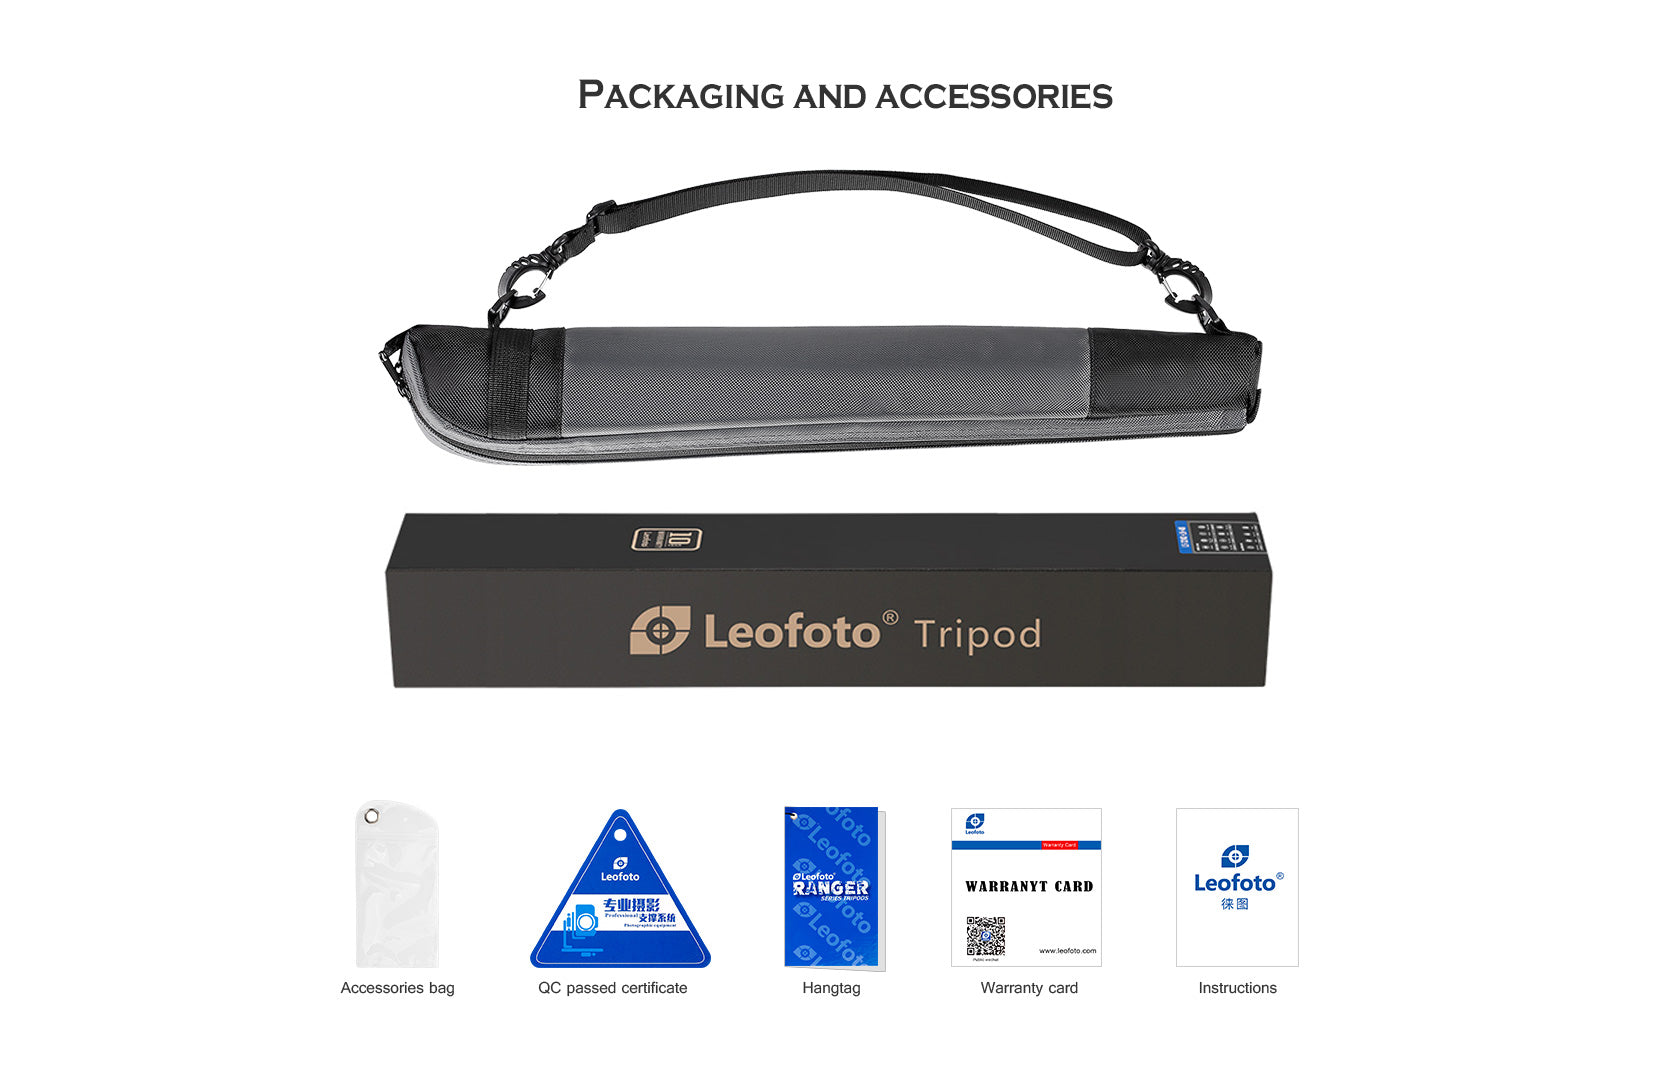 Leofoto MP-285C Monopod + LH-25 Mini Low Profile Ball Head Kit